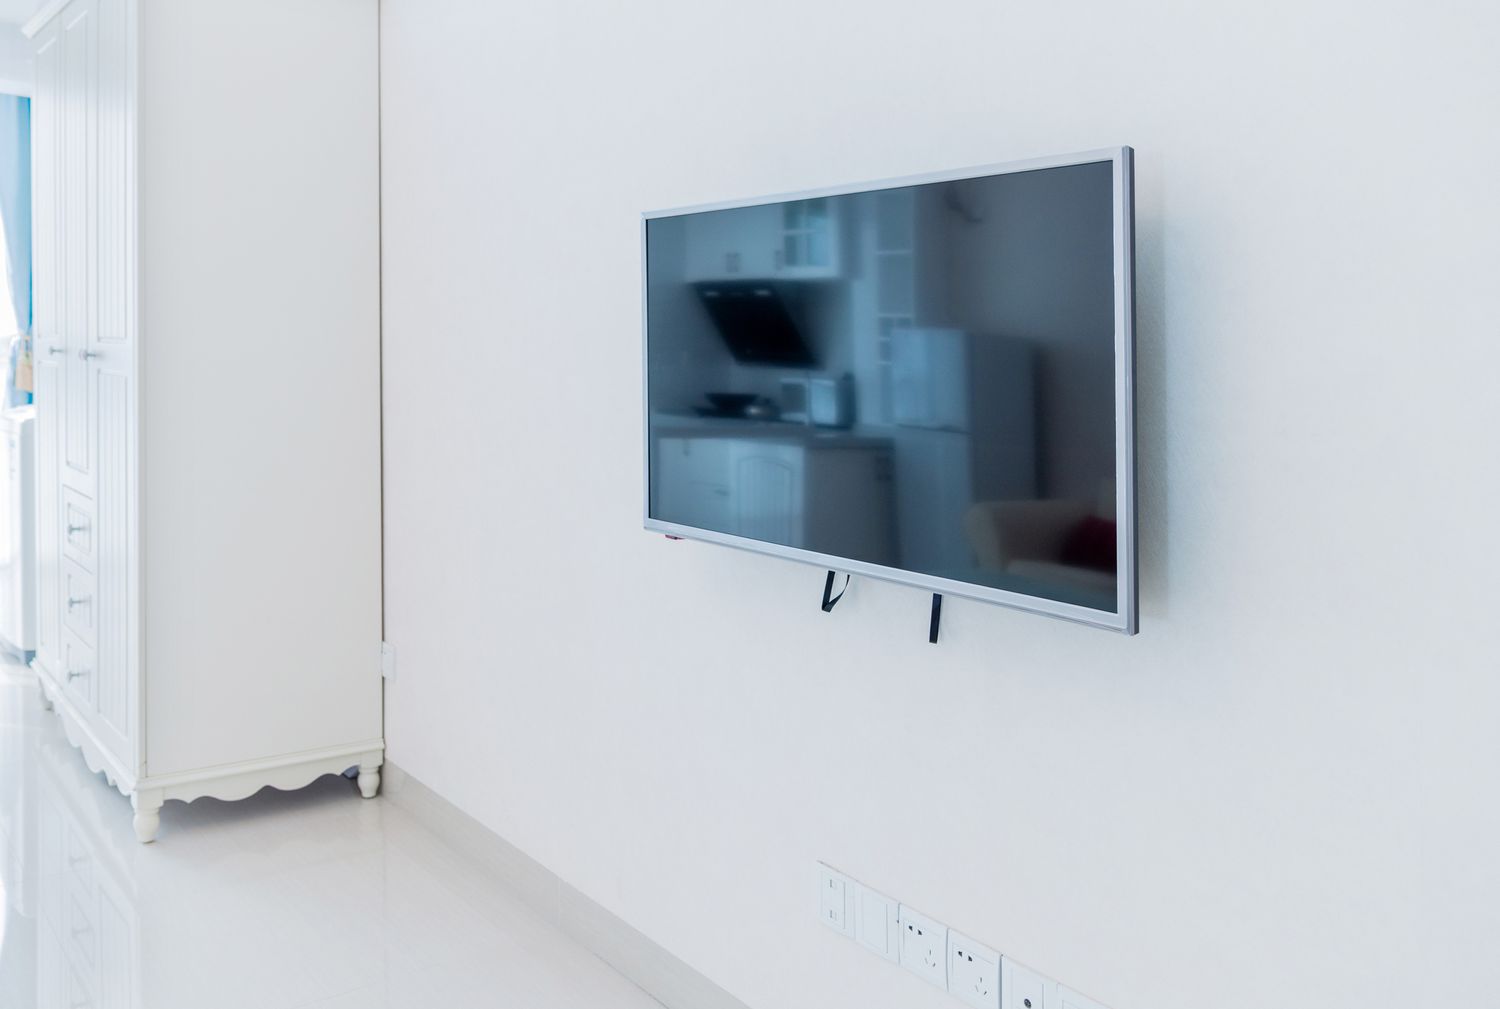 Une télévision à écran plat montée sur un mur